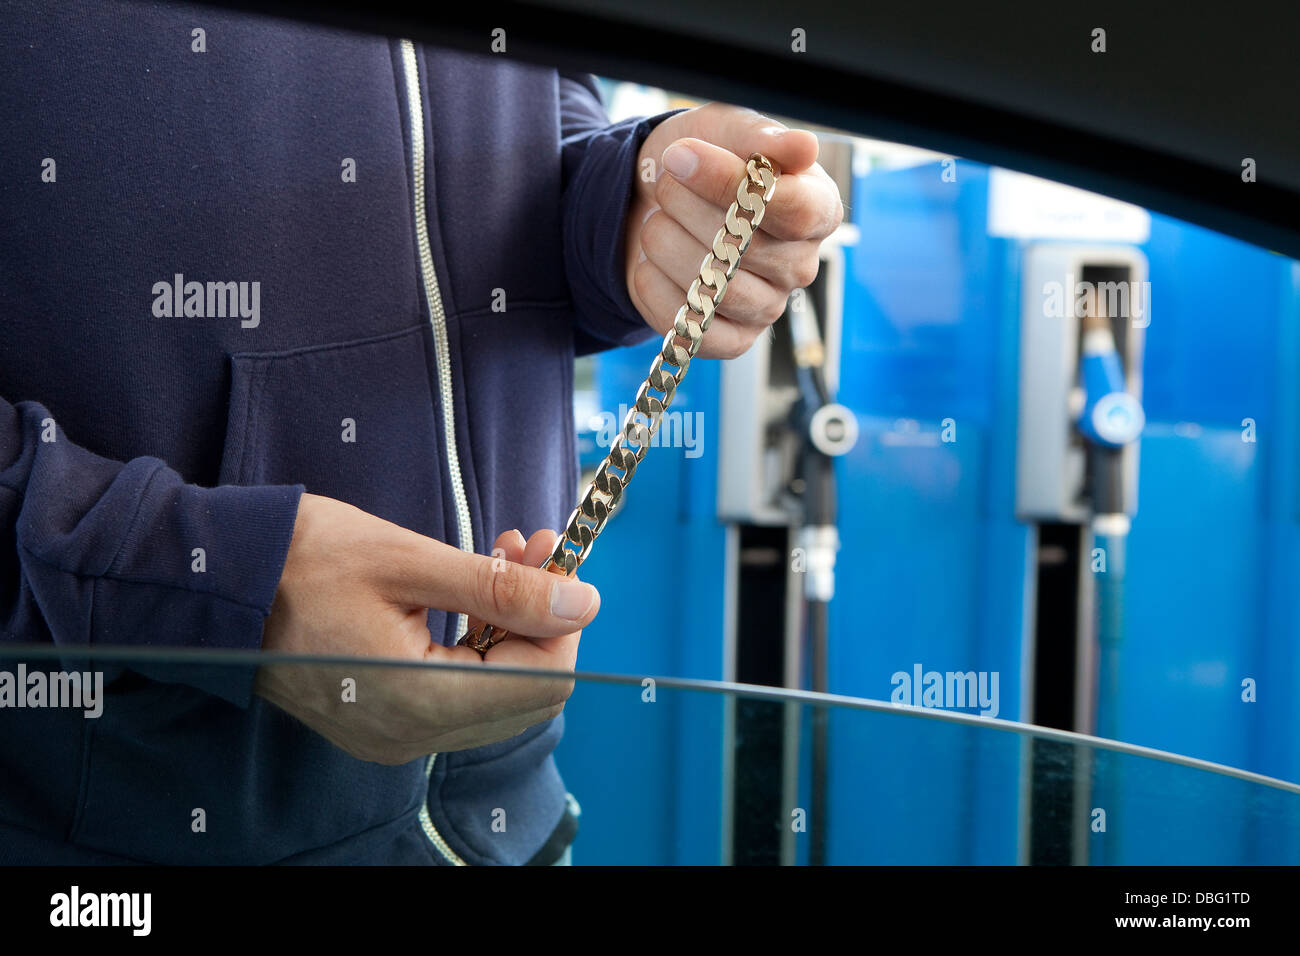 Un homme propose des bijoux volés à une station essence Banque D'Images